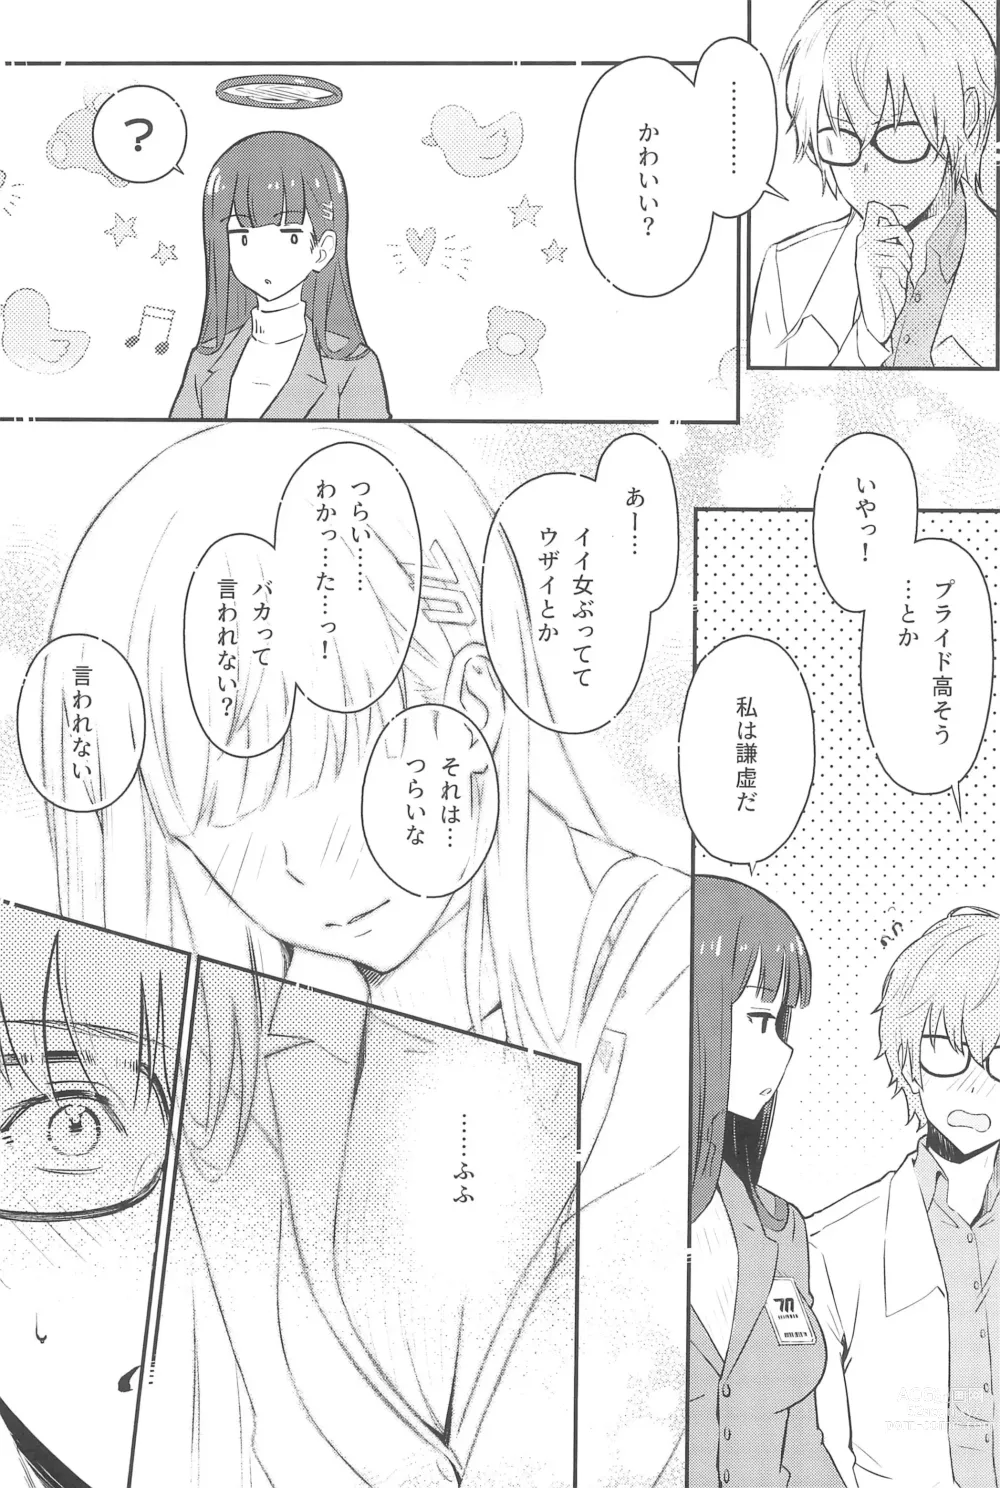 Page 9 of doujinshi Rio-chan wa Otosaretai. - Rio Want To Be Fall in Love